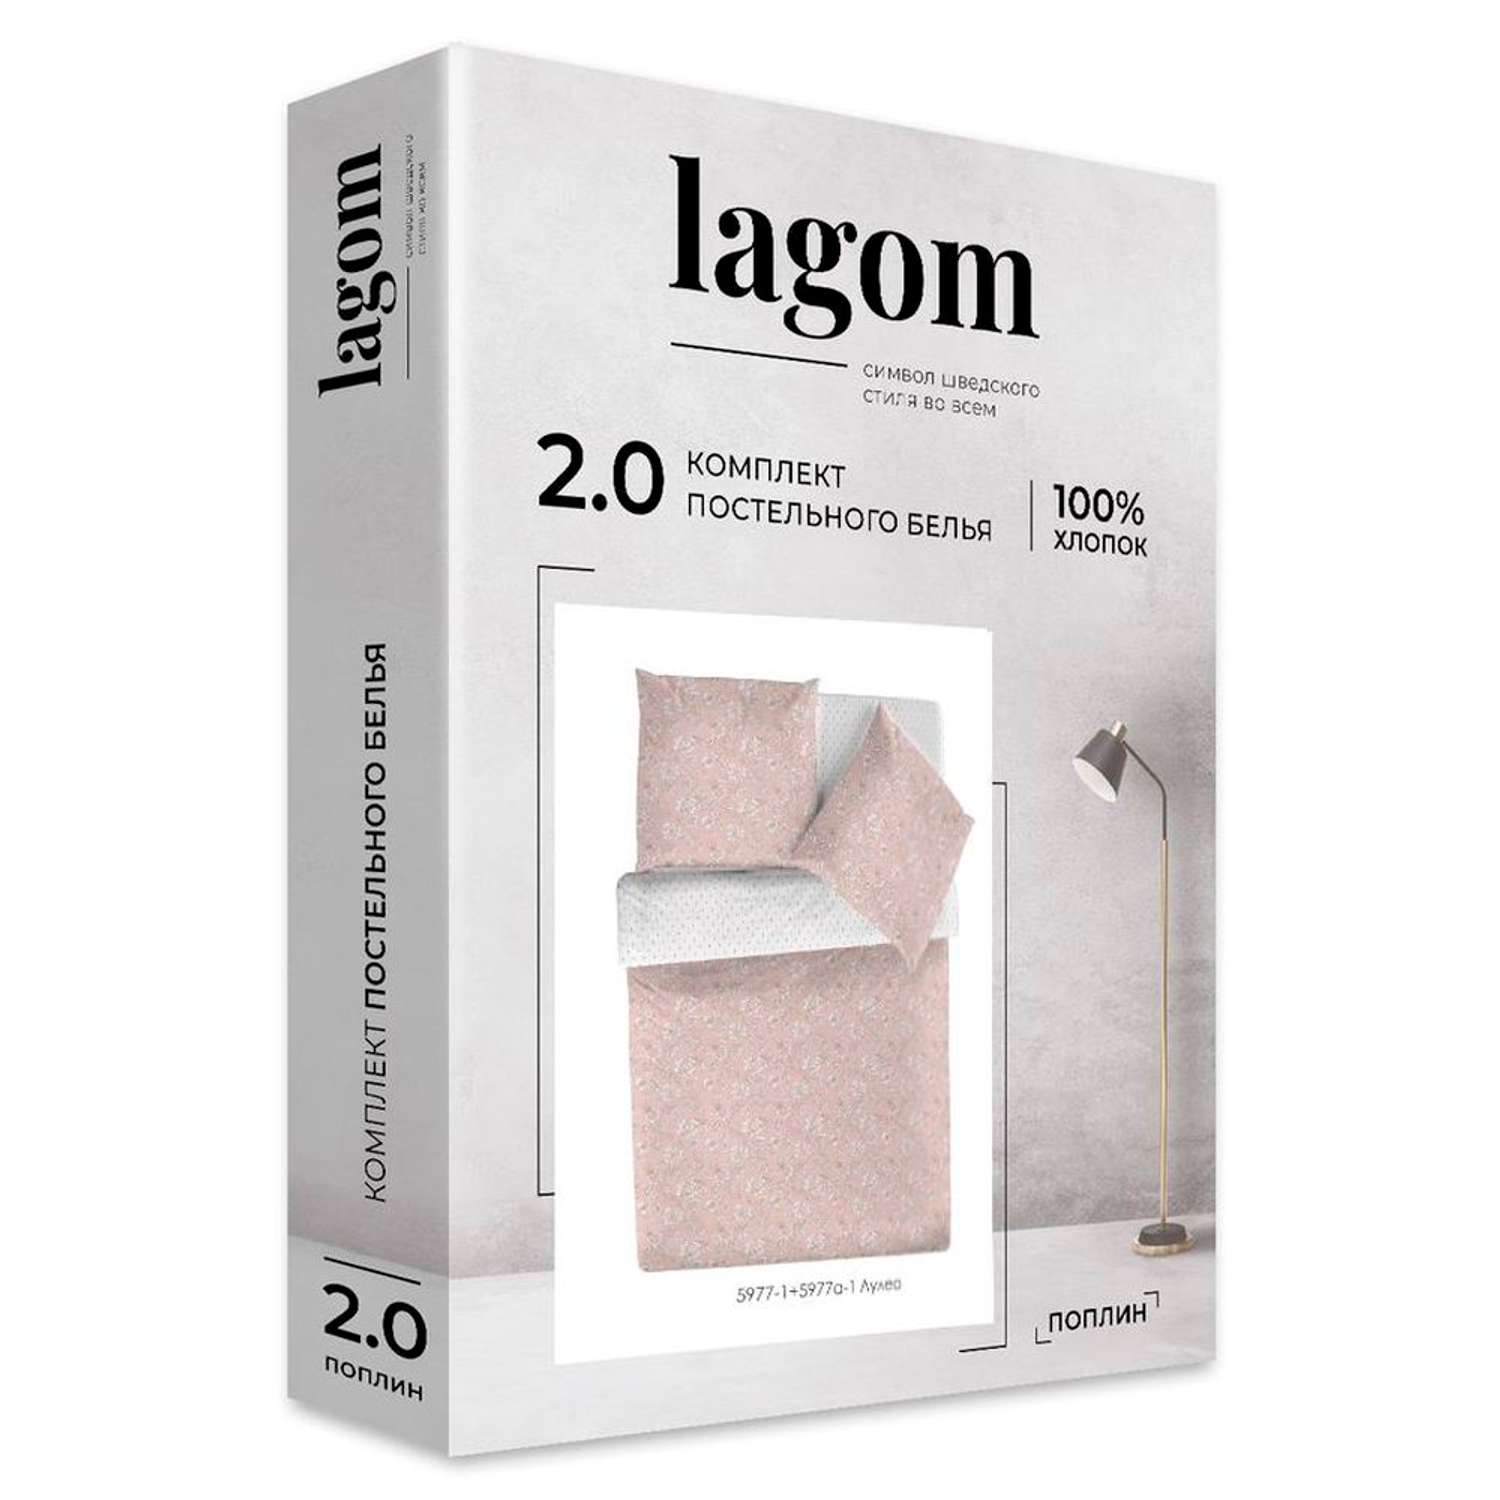 Комплект постельного белья lagom Лулео 2-спальный макси наволочки 70х70 рис.5977-1+5977а-1 - фото 9